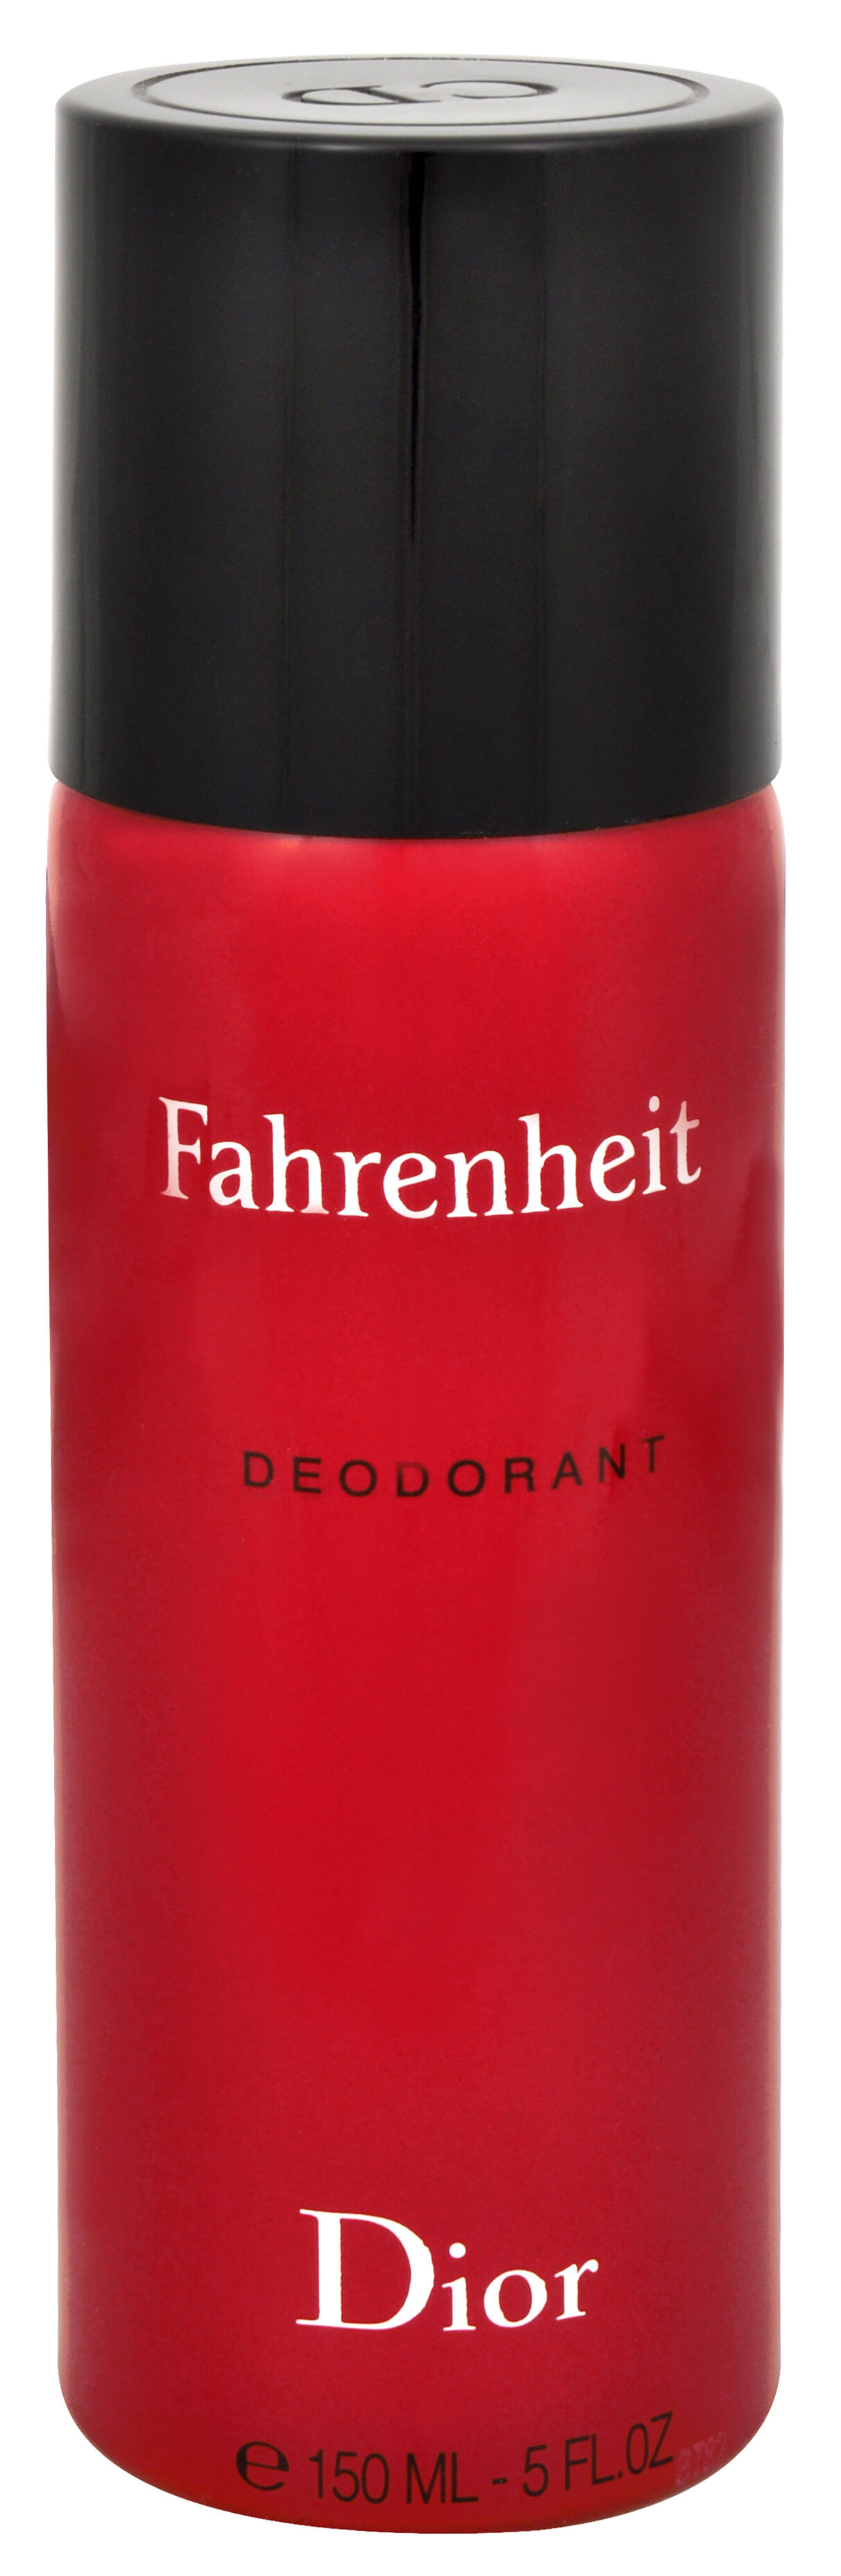 Dior Fahrenheit - deodorant v spreji 150 ml + 2 mesiace na vrátenie tovaru